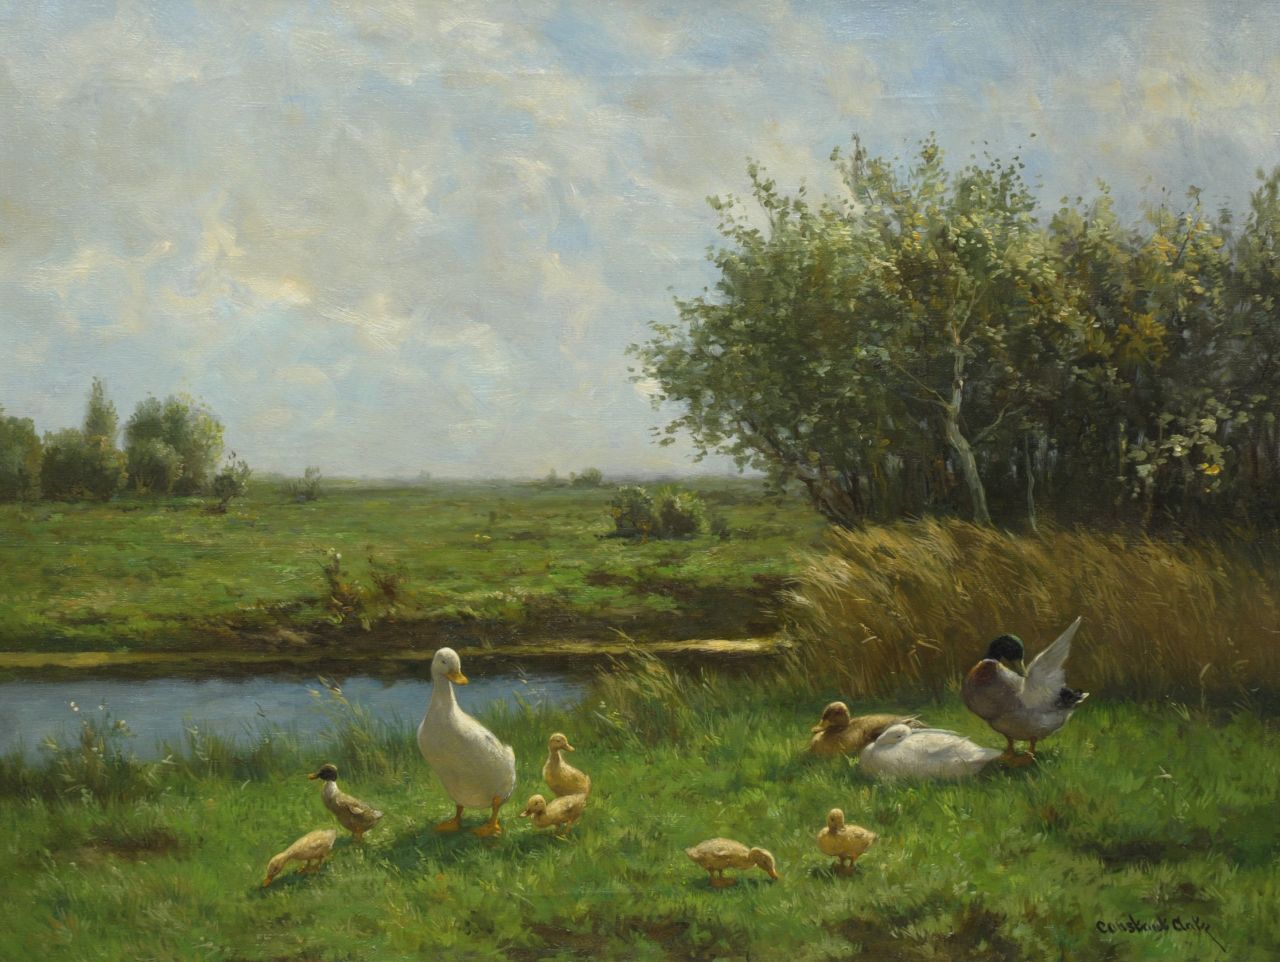 Artz C.D.L.  | 'Constant' David Ludovic Artz, Polder landscape with ducks, Öl auf Leinwand 60,5 x 80,0 cm, signed l.r.